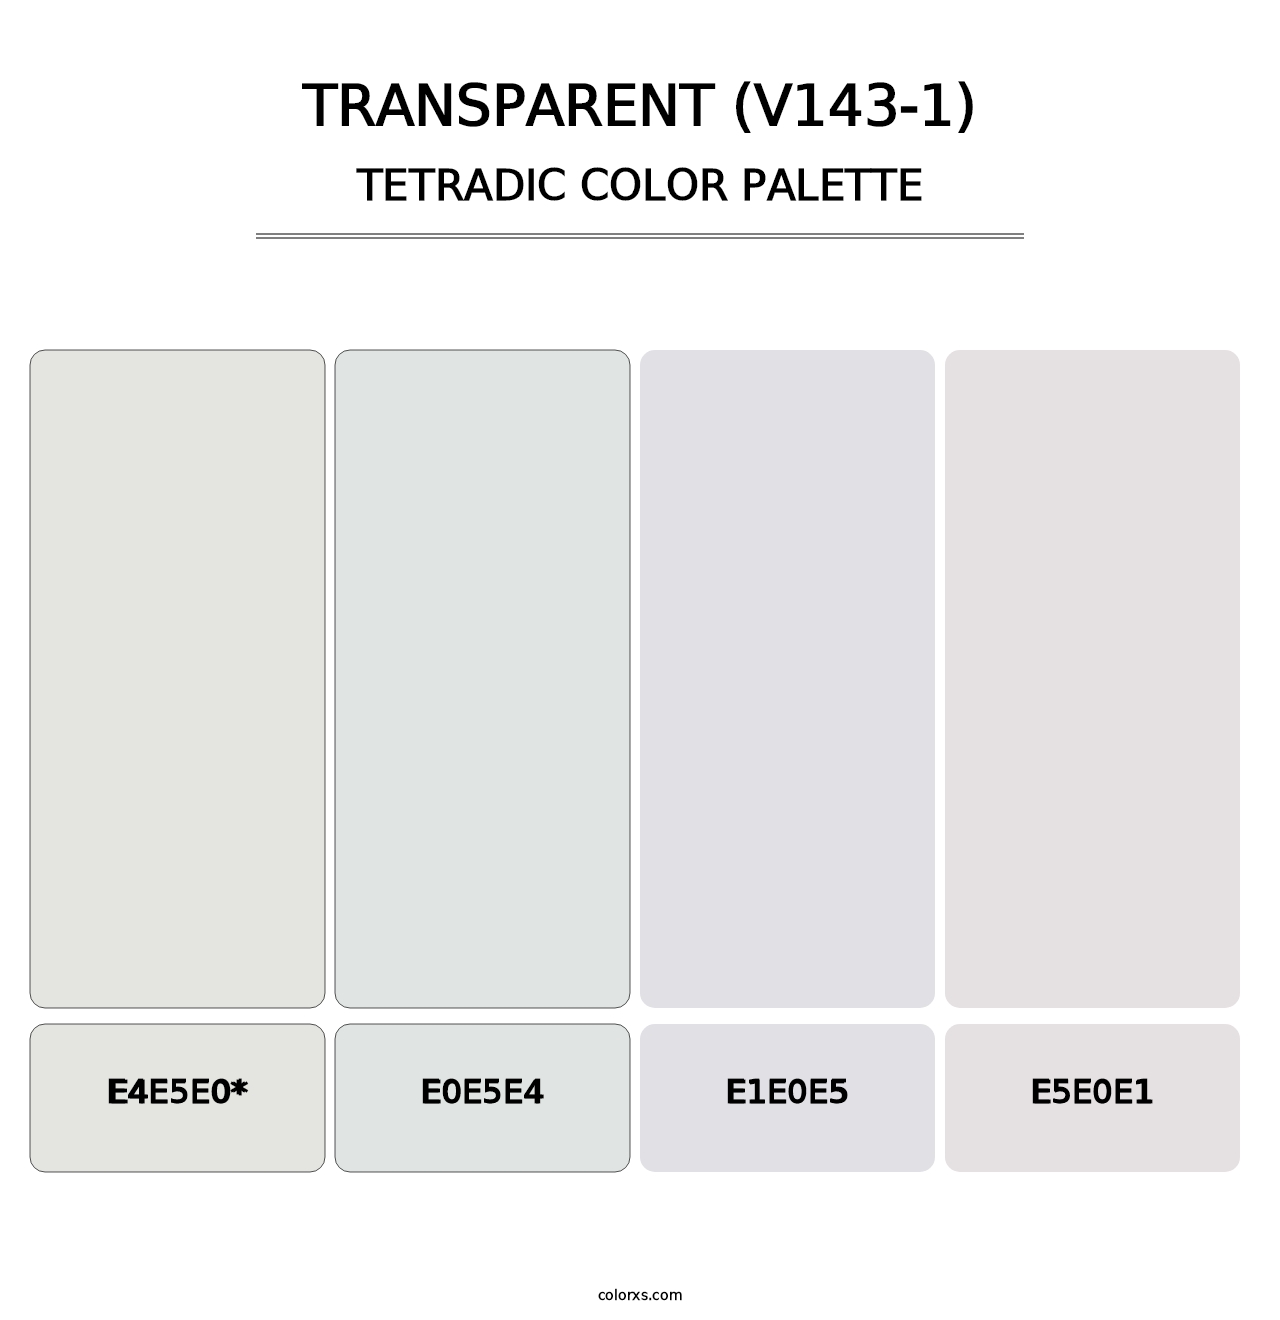 Transparent (V143-1) - Tetradic Color Palette